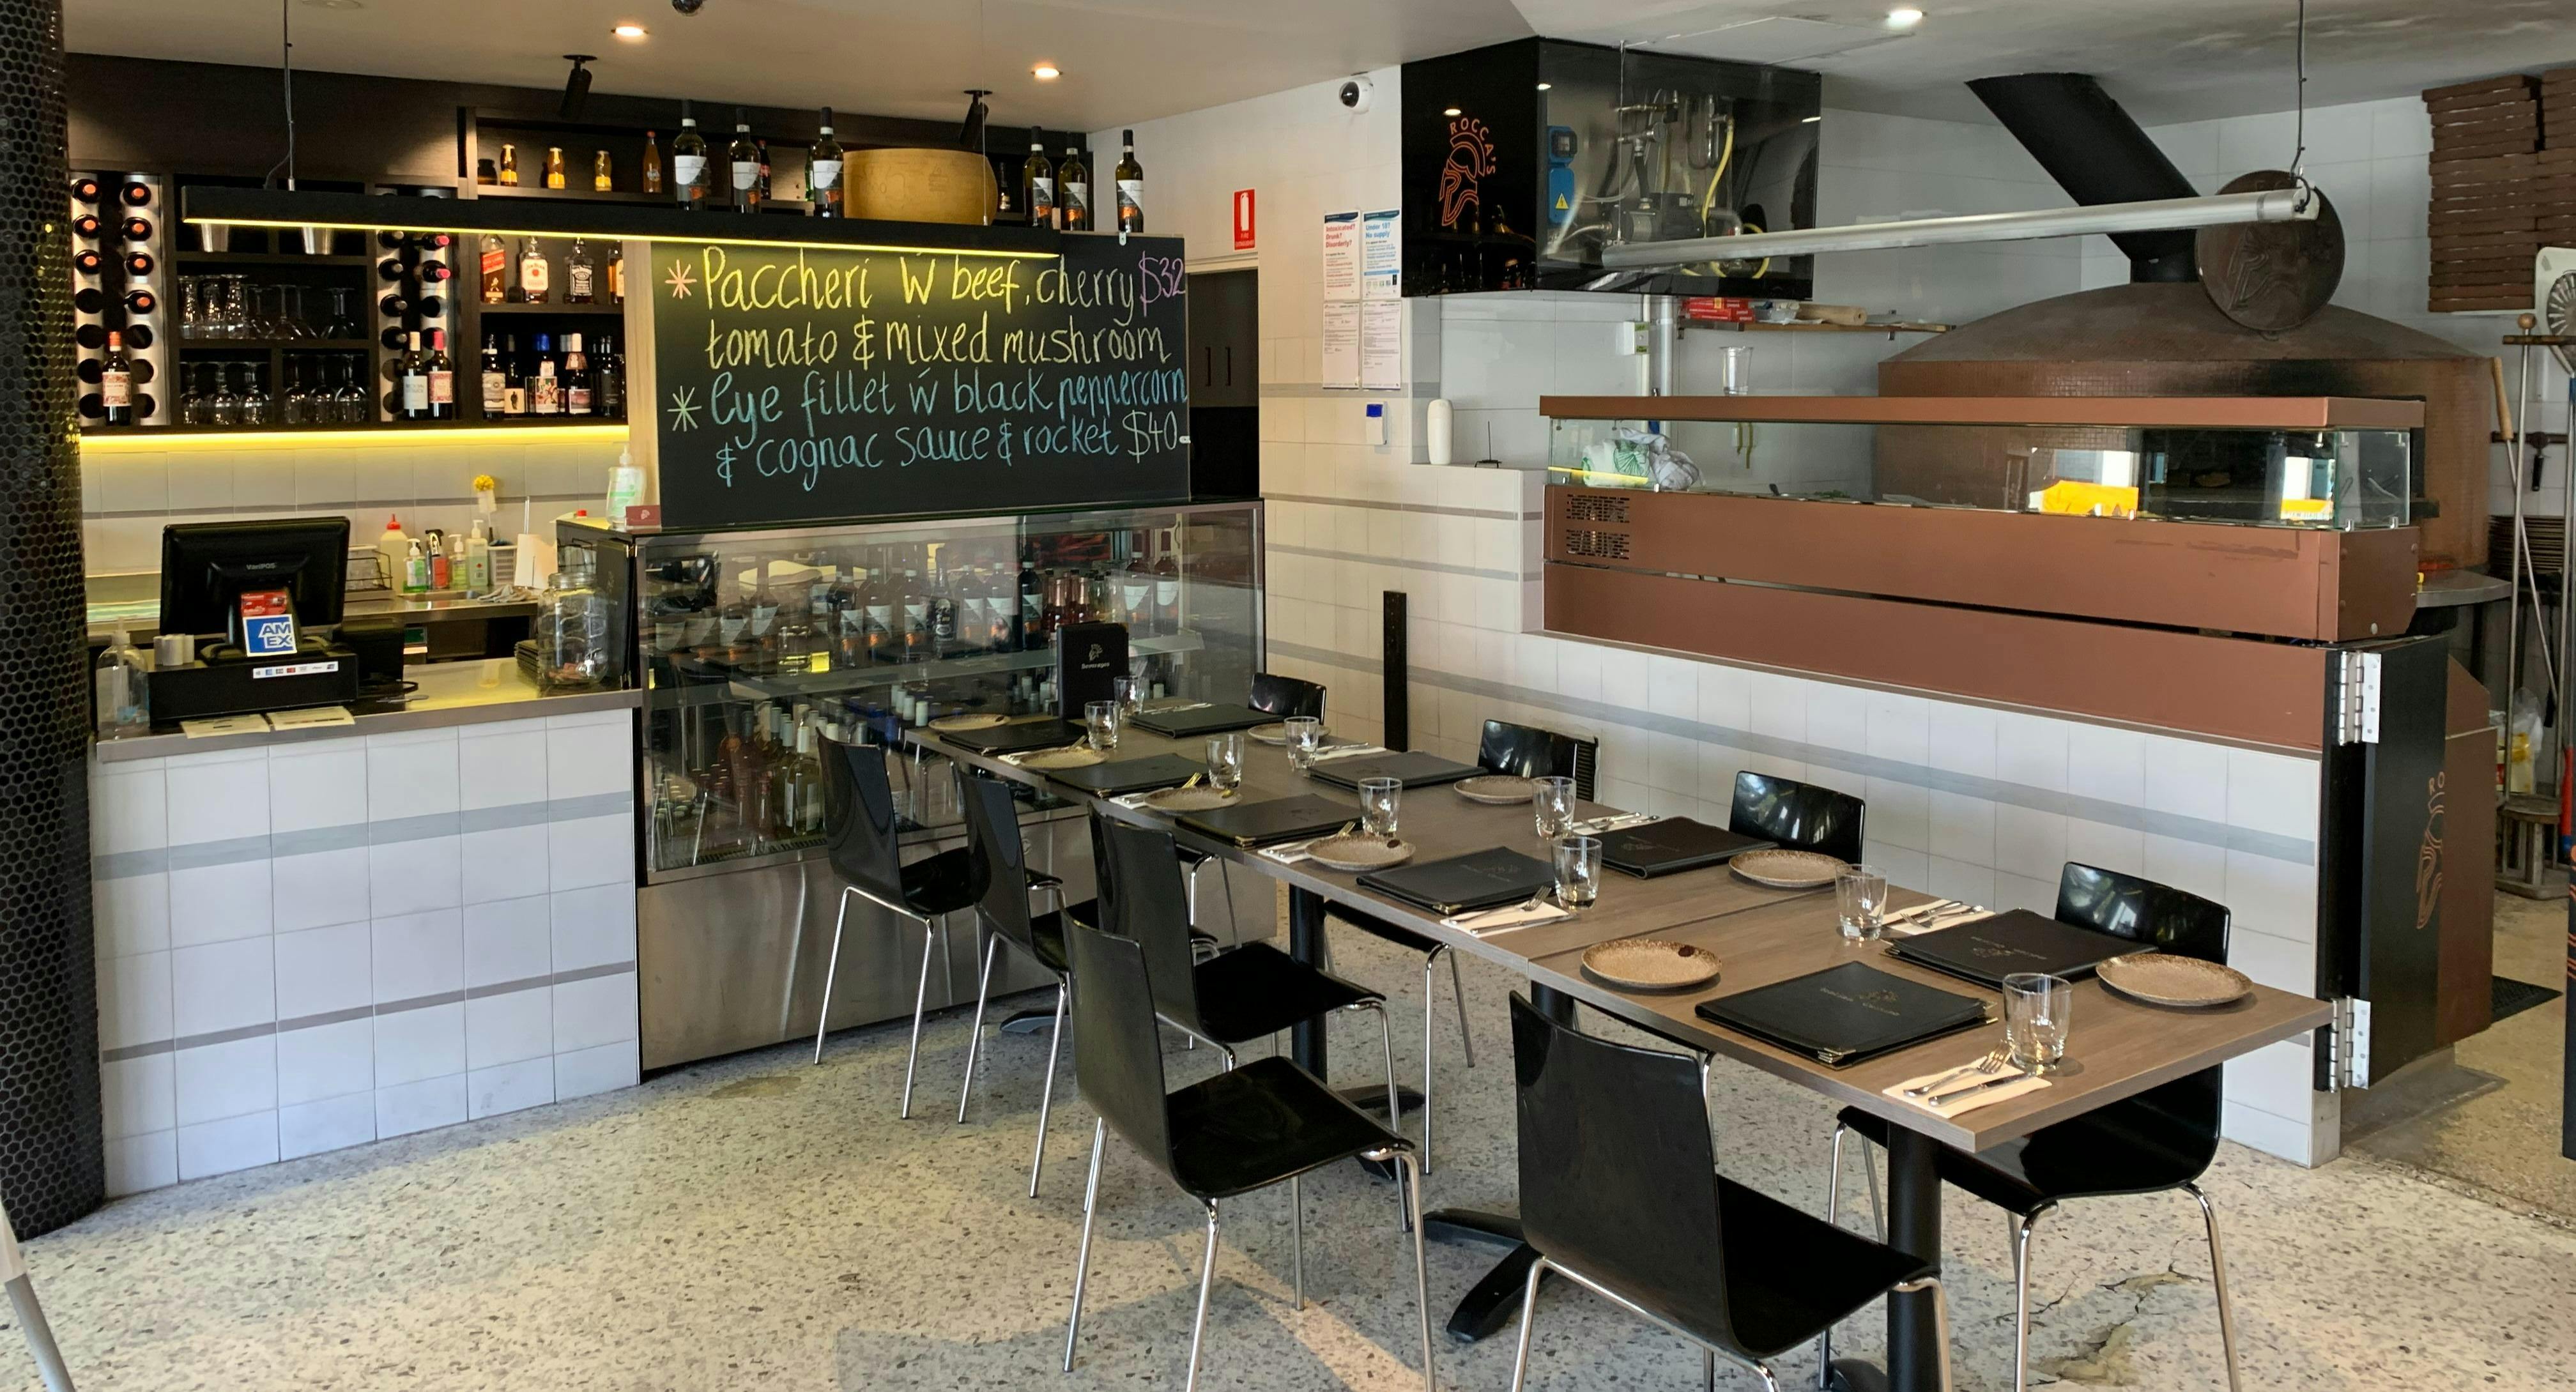 Photo of restaurant Rocca's Woodfire Pizzeria & Pasta Bar in Blackburn, Melbourne